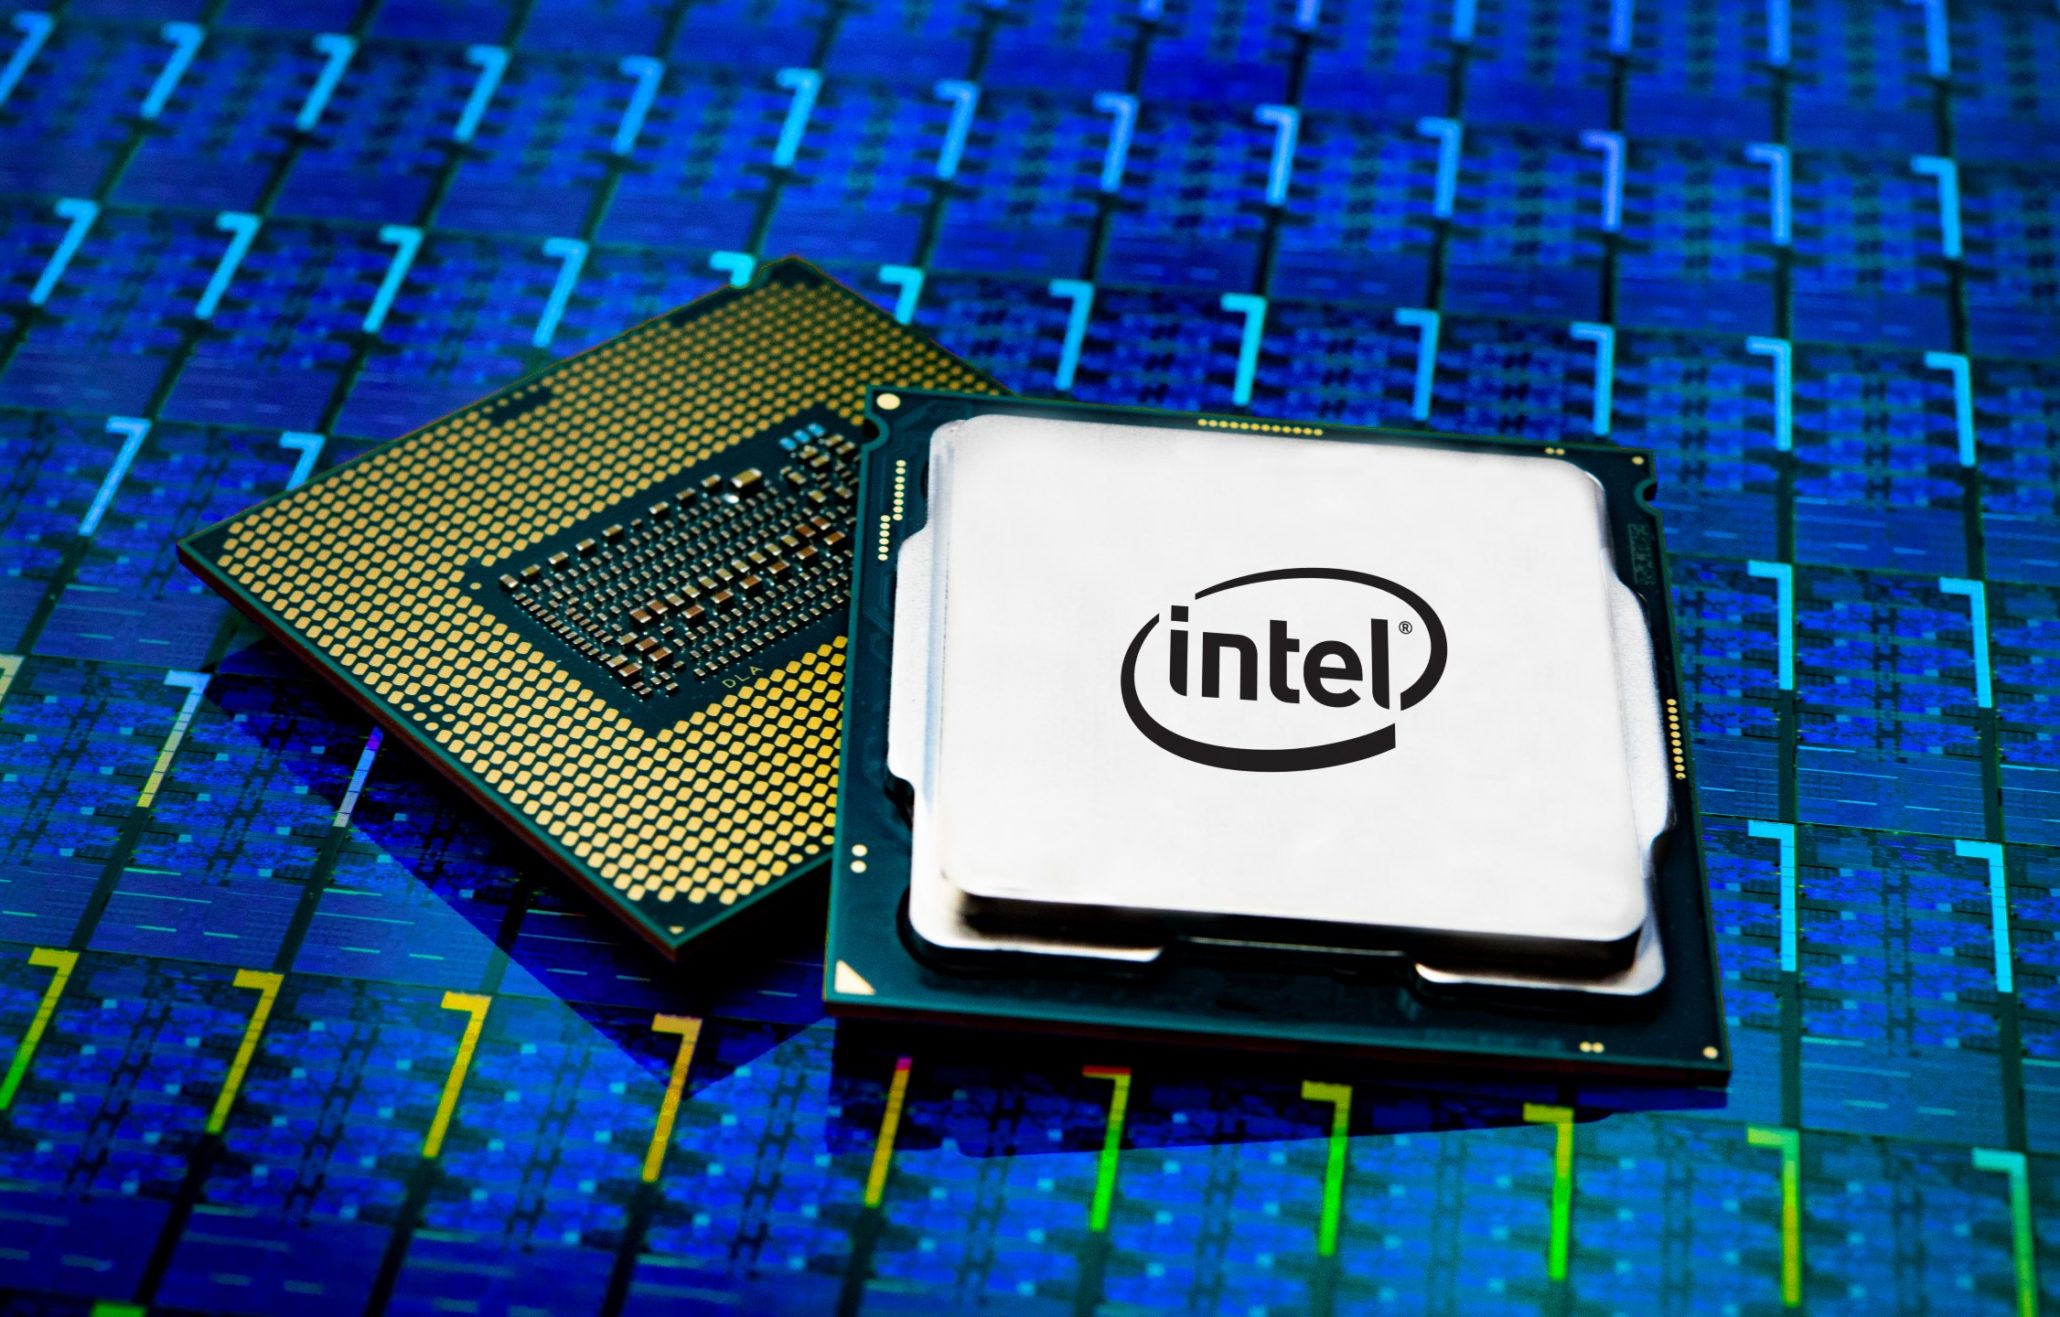 4. Intel Core i5-9600K Desktop Processor